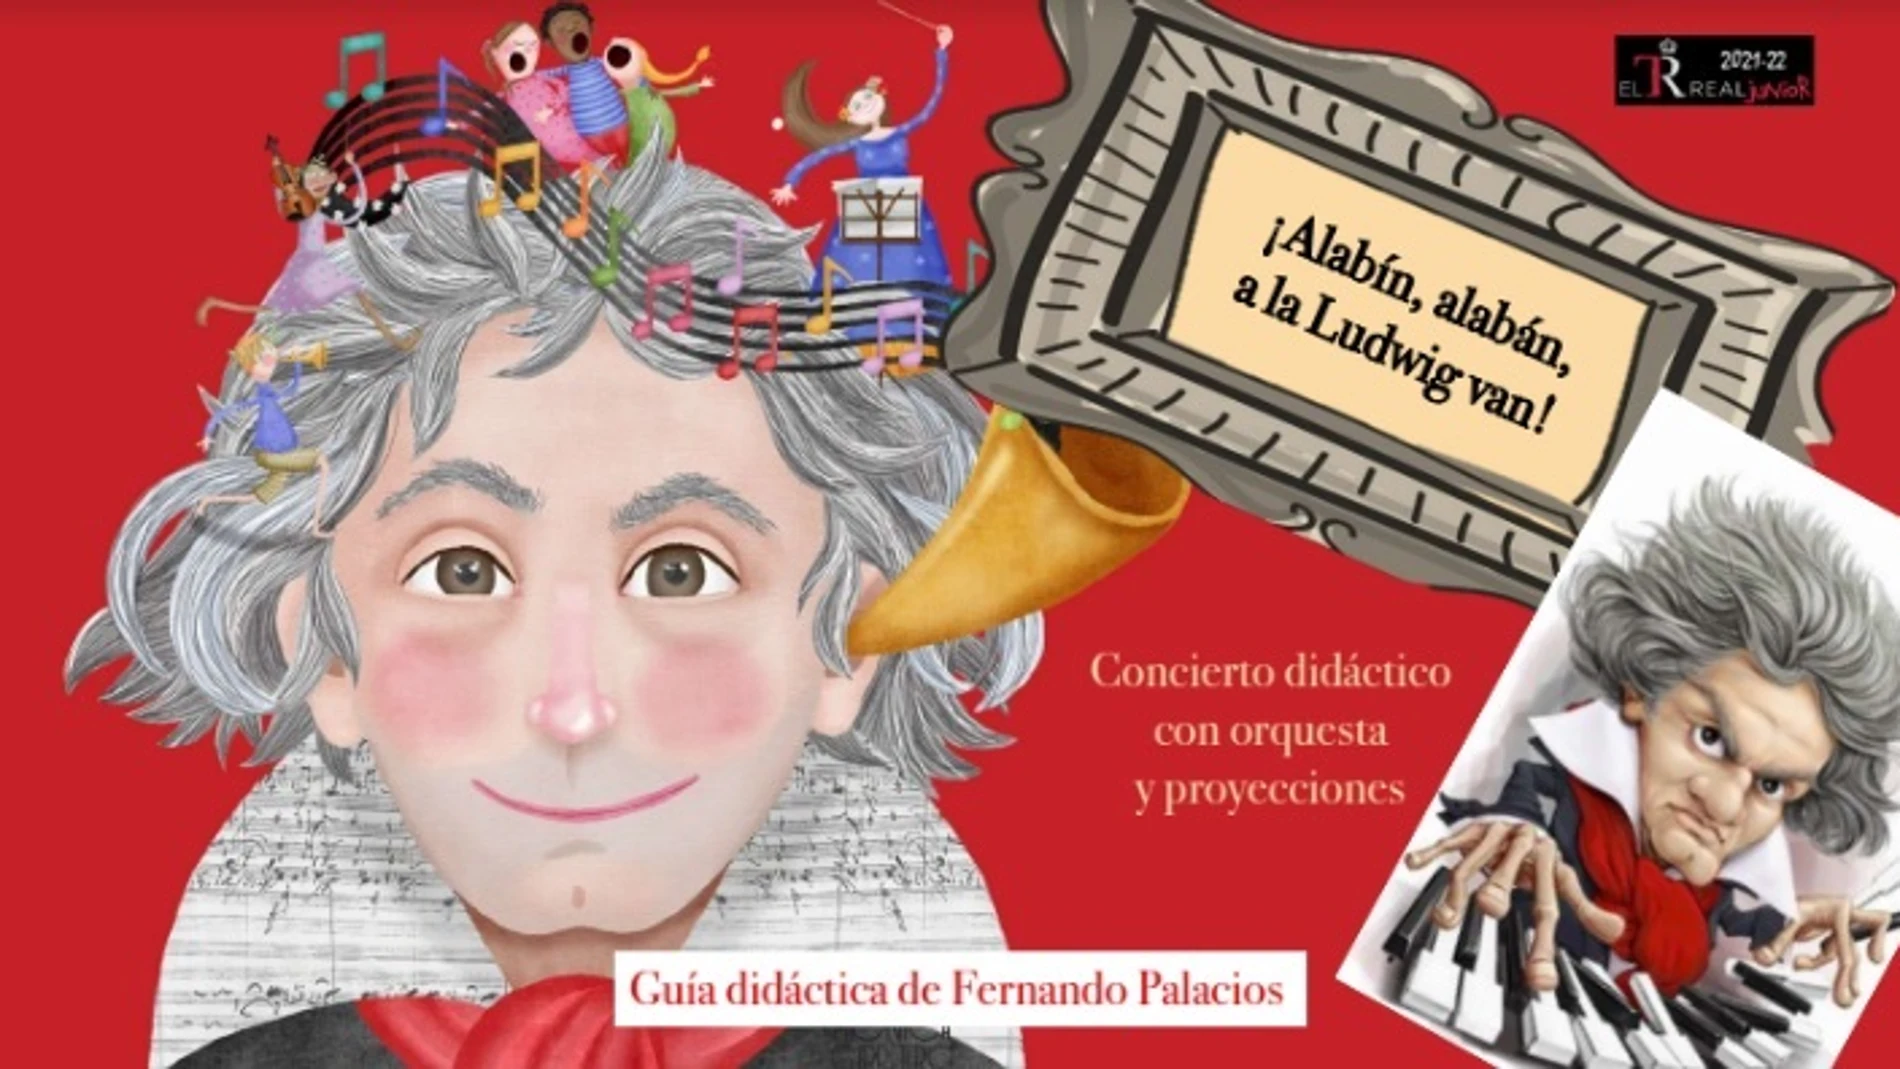 El Teatro Real y Luis Piedrahita celebran Beethoven en familia EL TEATRO REAL 27/04/2022